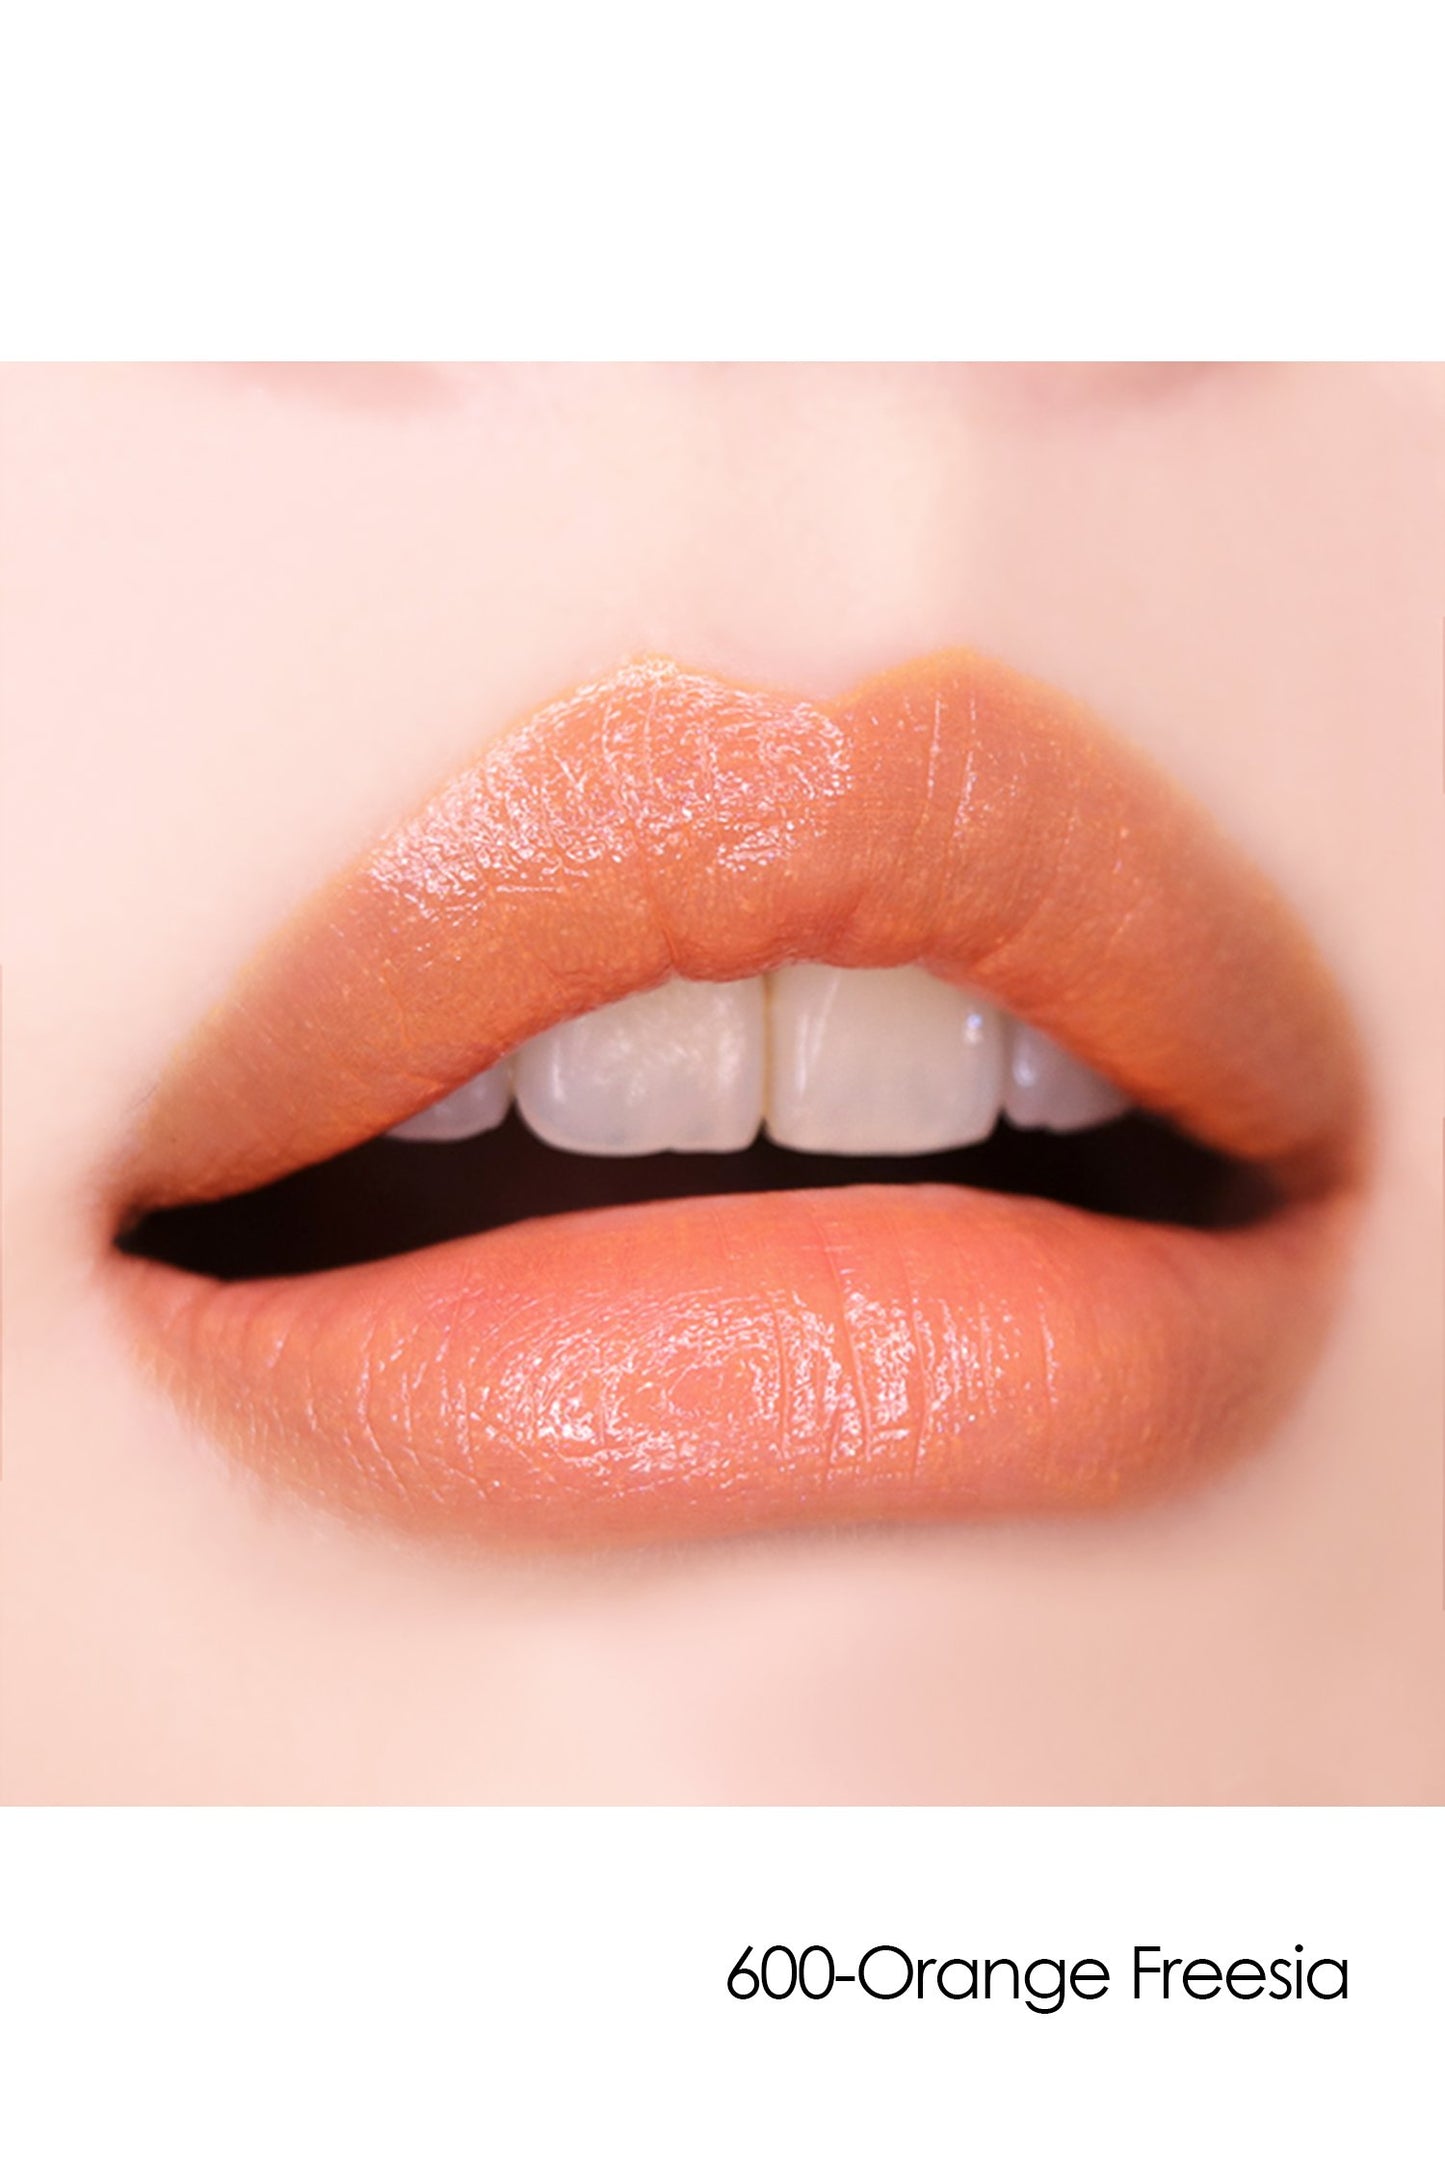 Lipstick S: Sheer Flower 600-Orange Freesia on lips